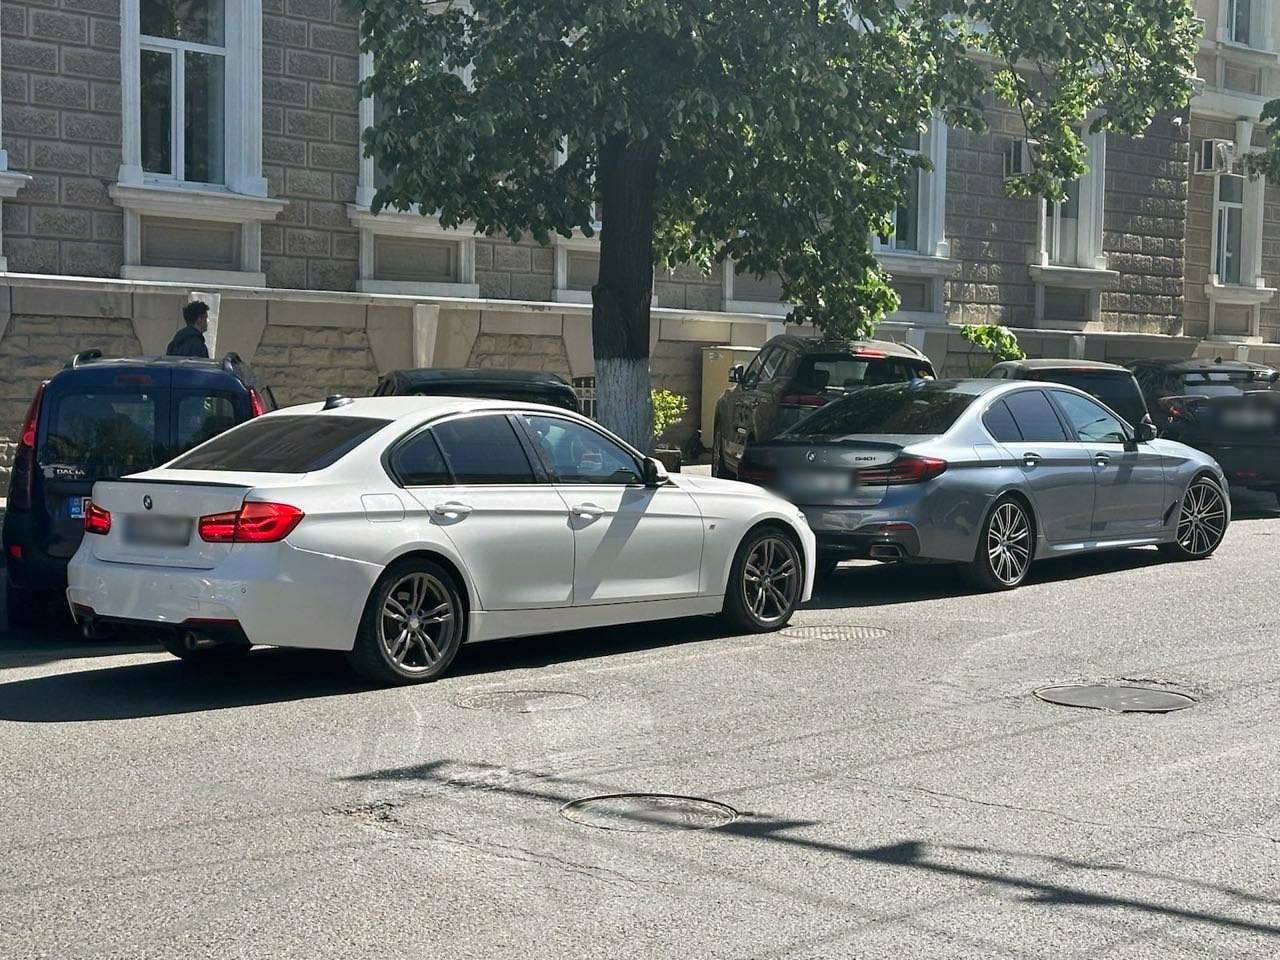 Șeful IGP a chemat un echipaj de poliție, pentru două mașini parcate neregulamentar: între timp - Cernăuțeanu a fost sunat de tatăl unuia dintre șoferi